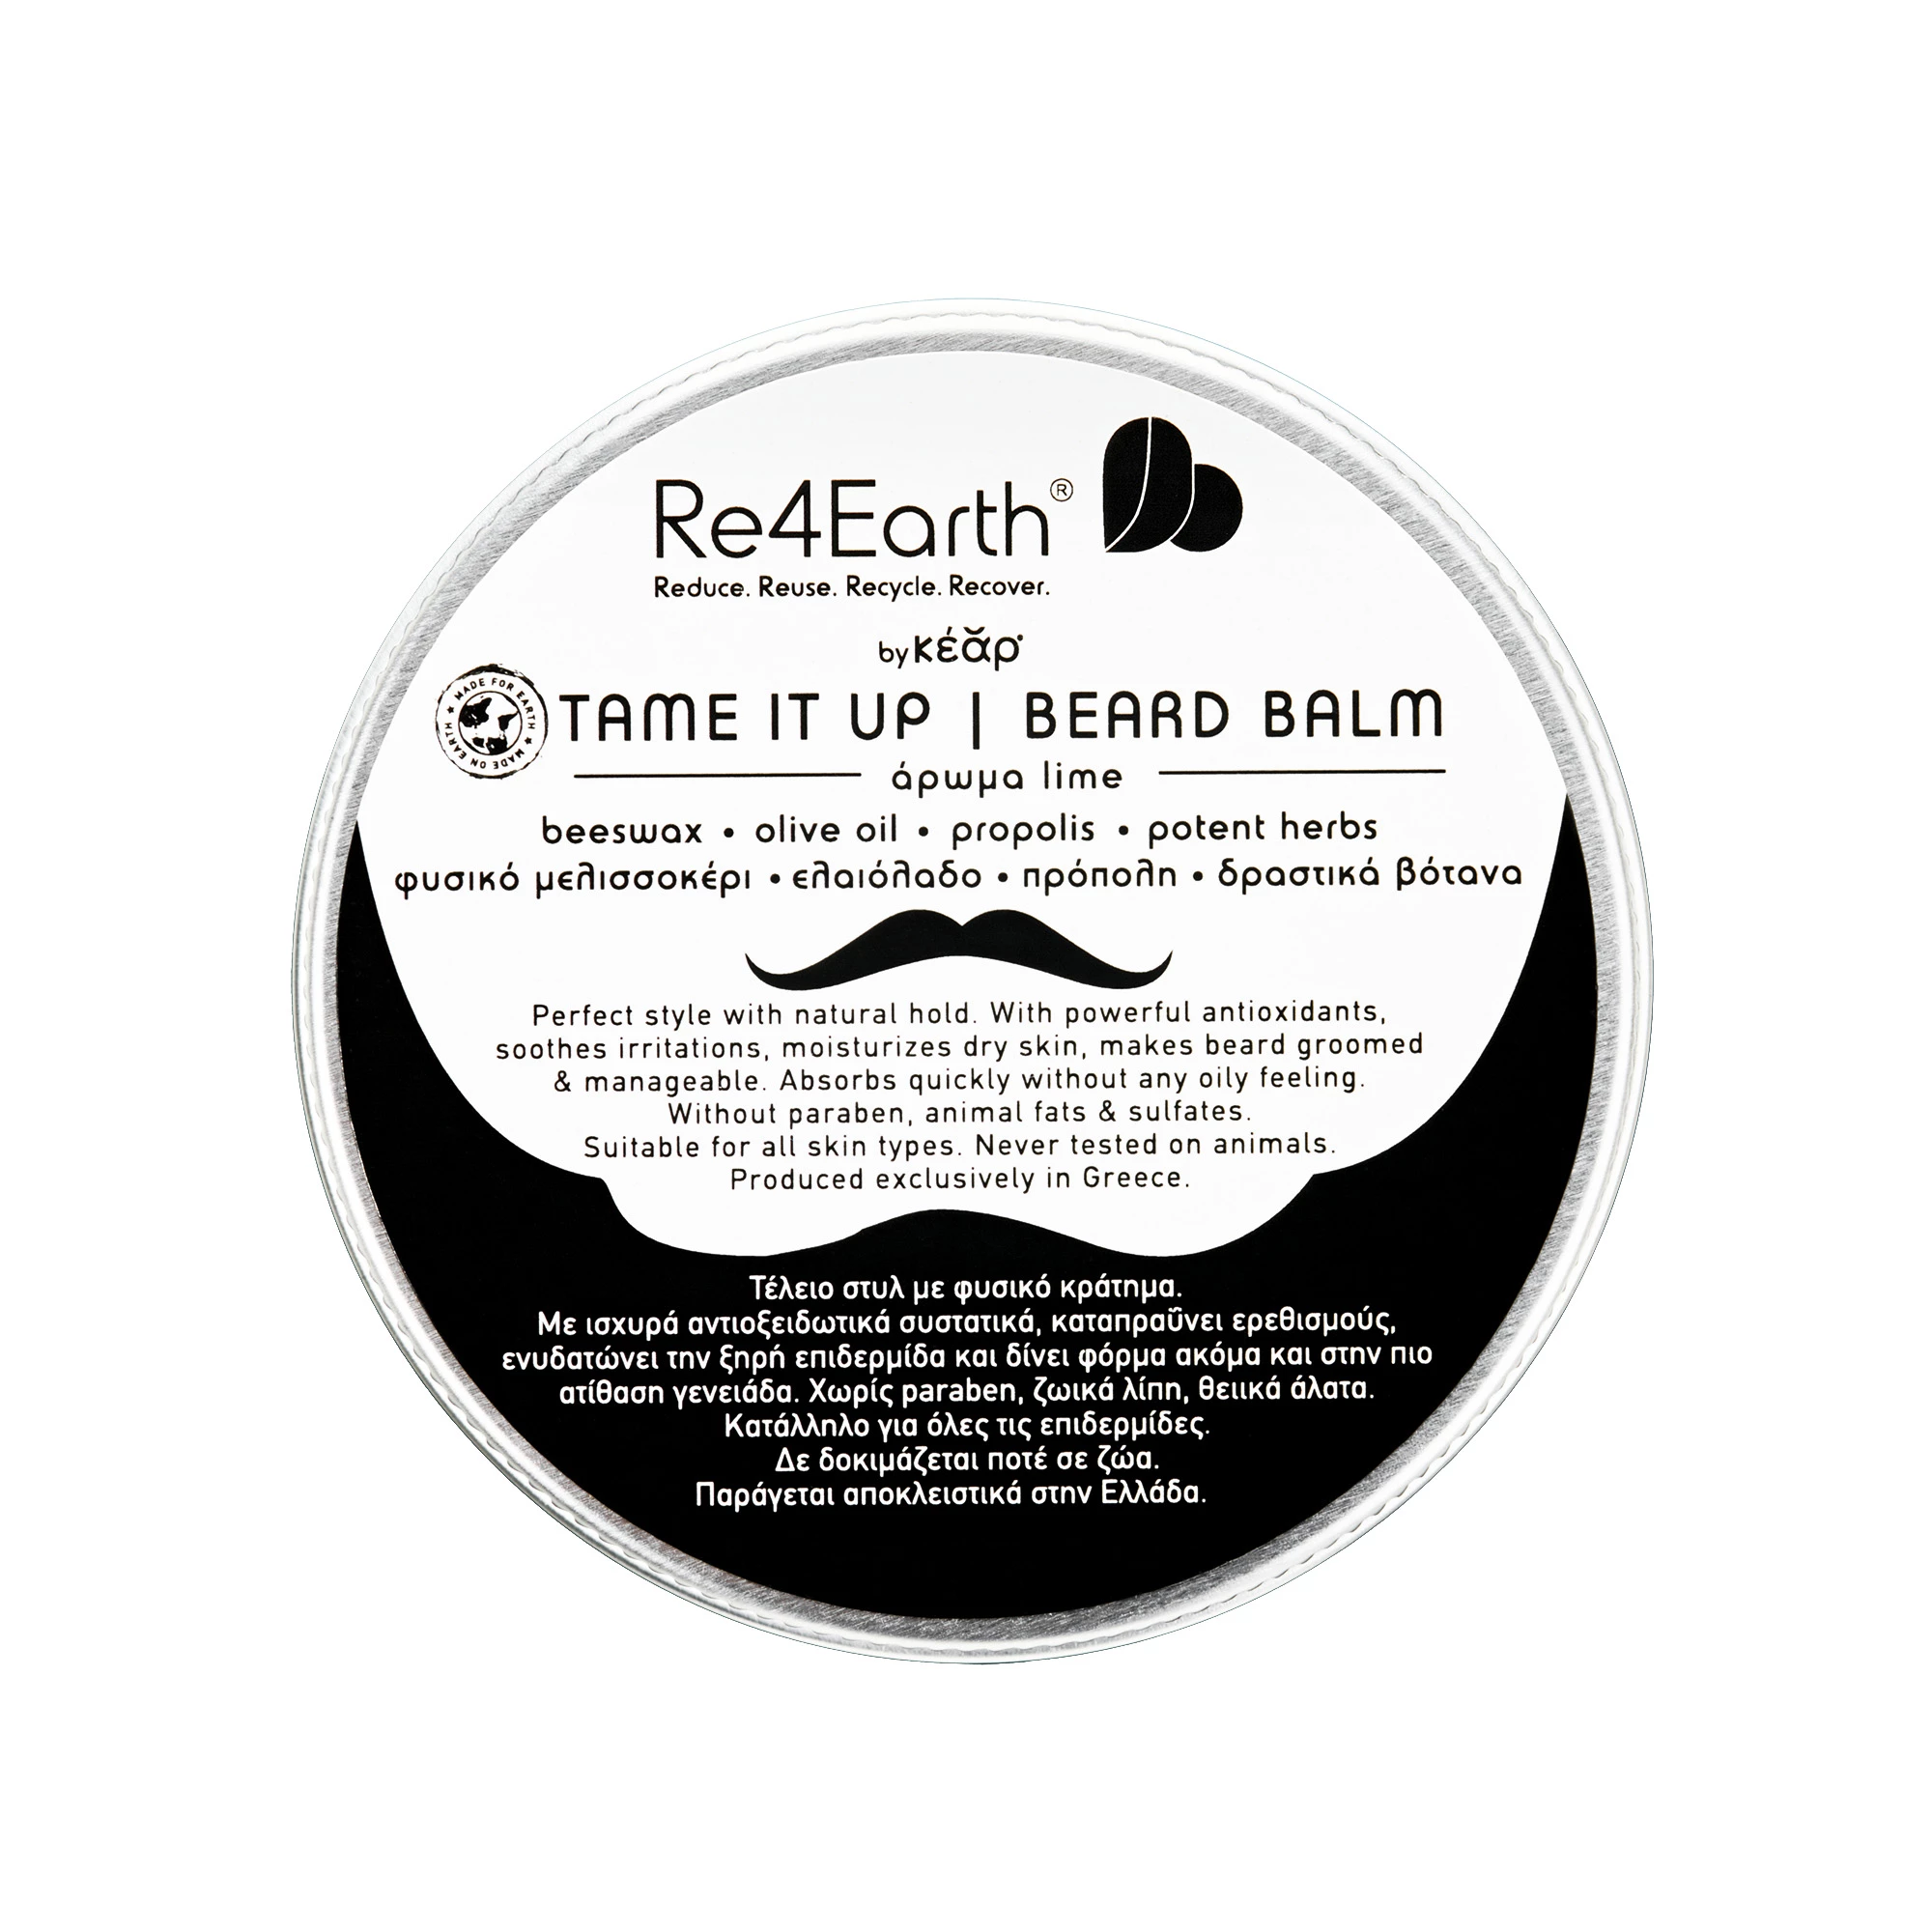 Re4Earth by Kear - Tame It Up Beard Balm